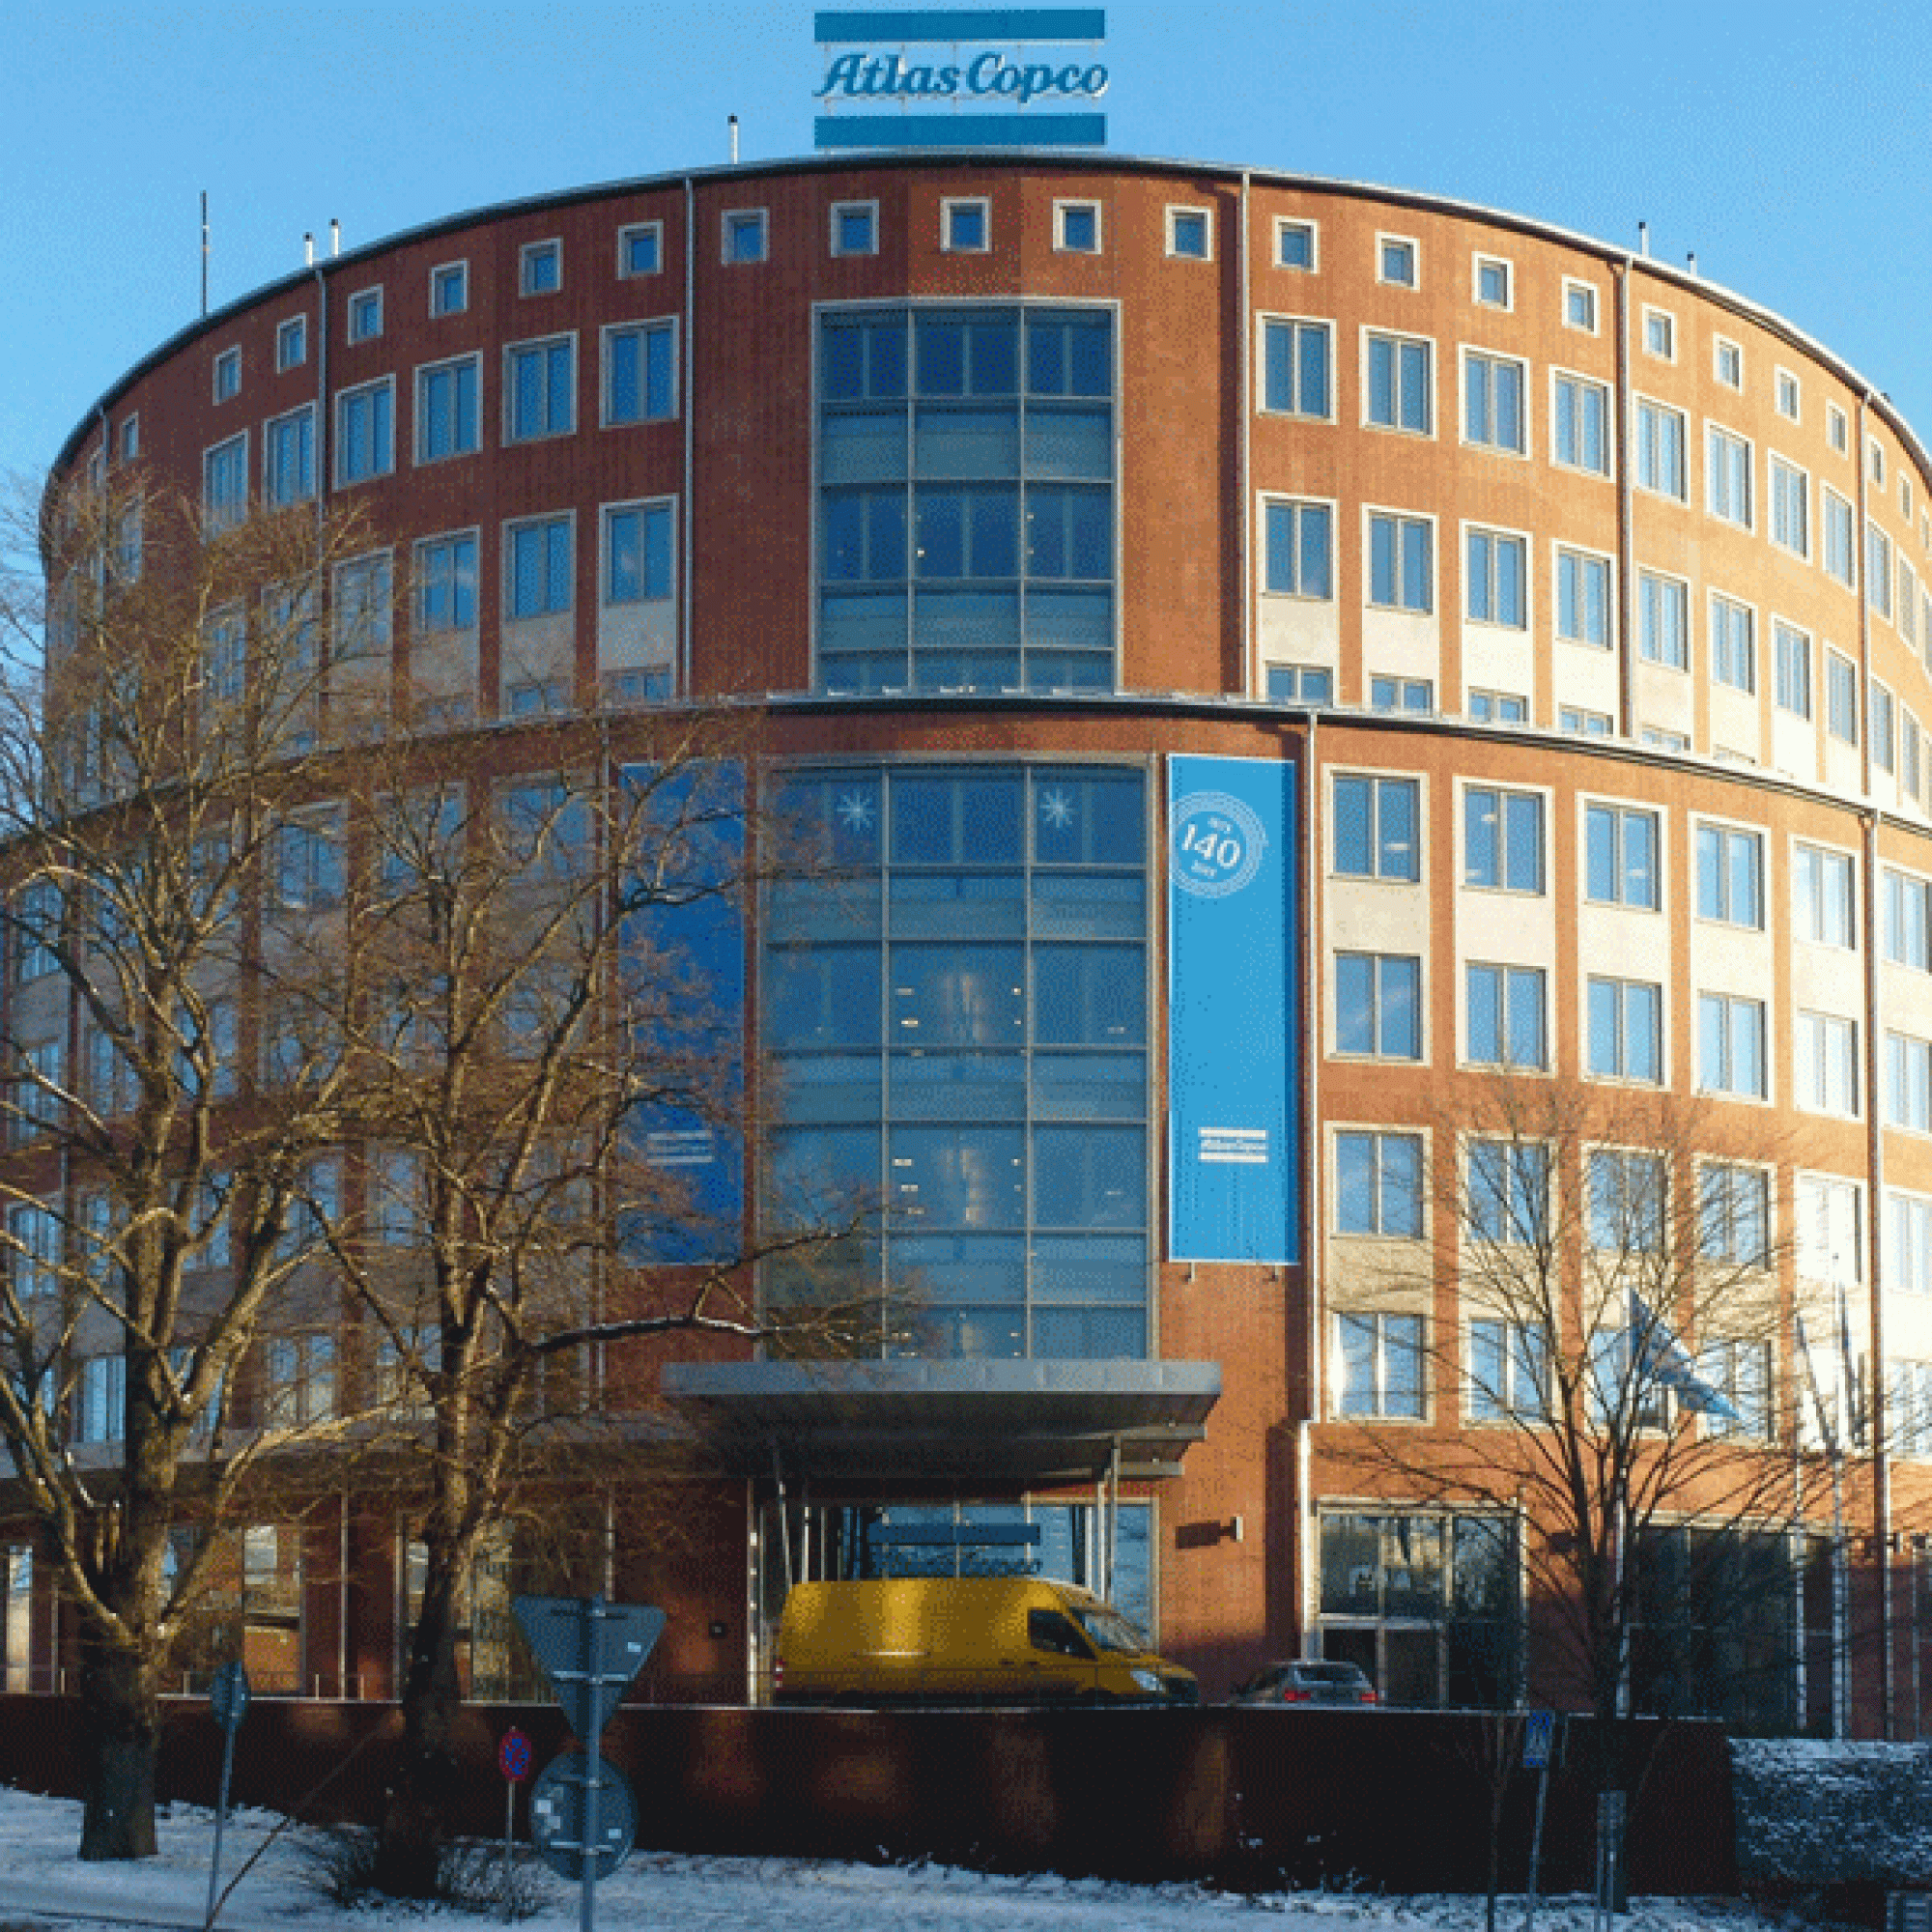 Atlas Copcos Hauptbüro in Nacka, Schweden.  (Bild: Holger.Ellgaard wikimedia CC BY-SA 3.0)